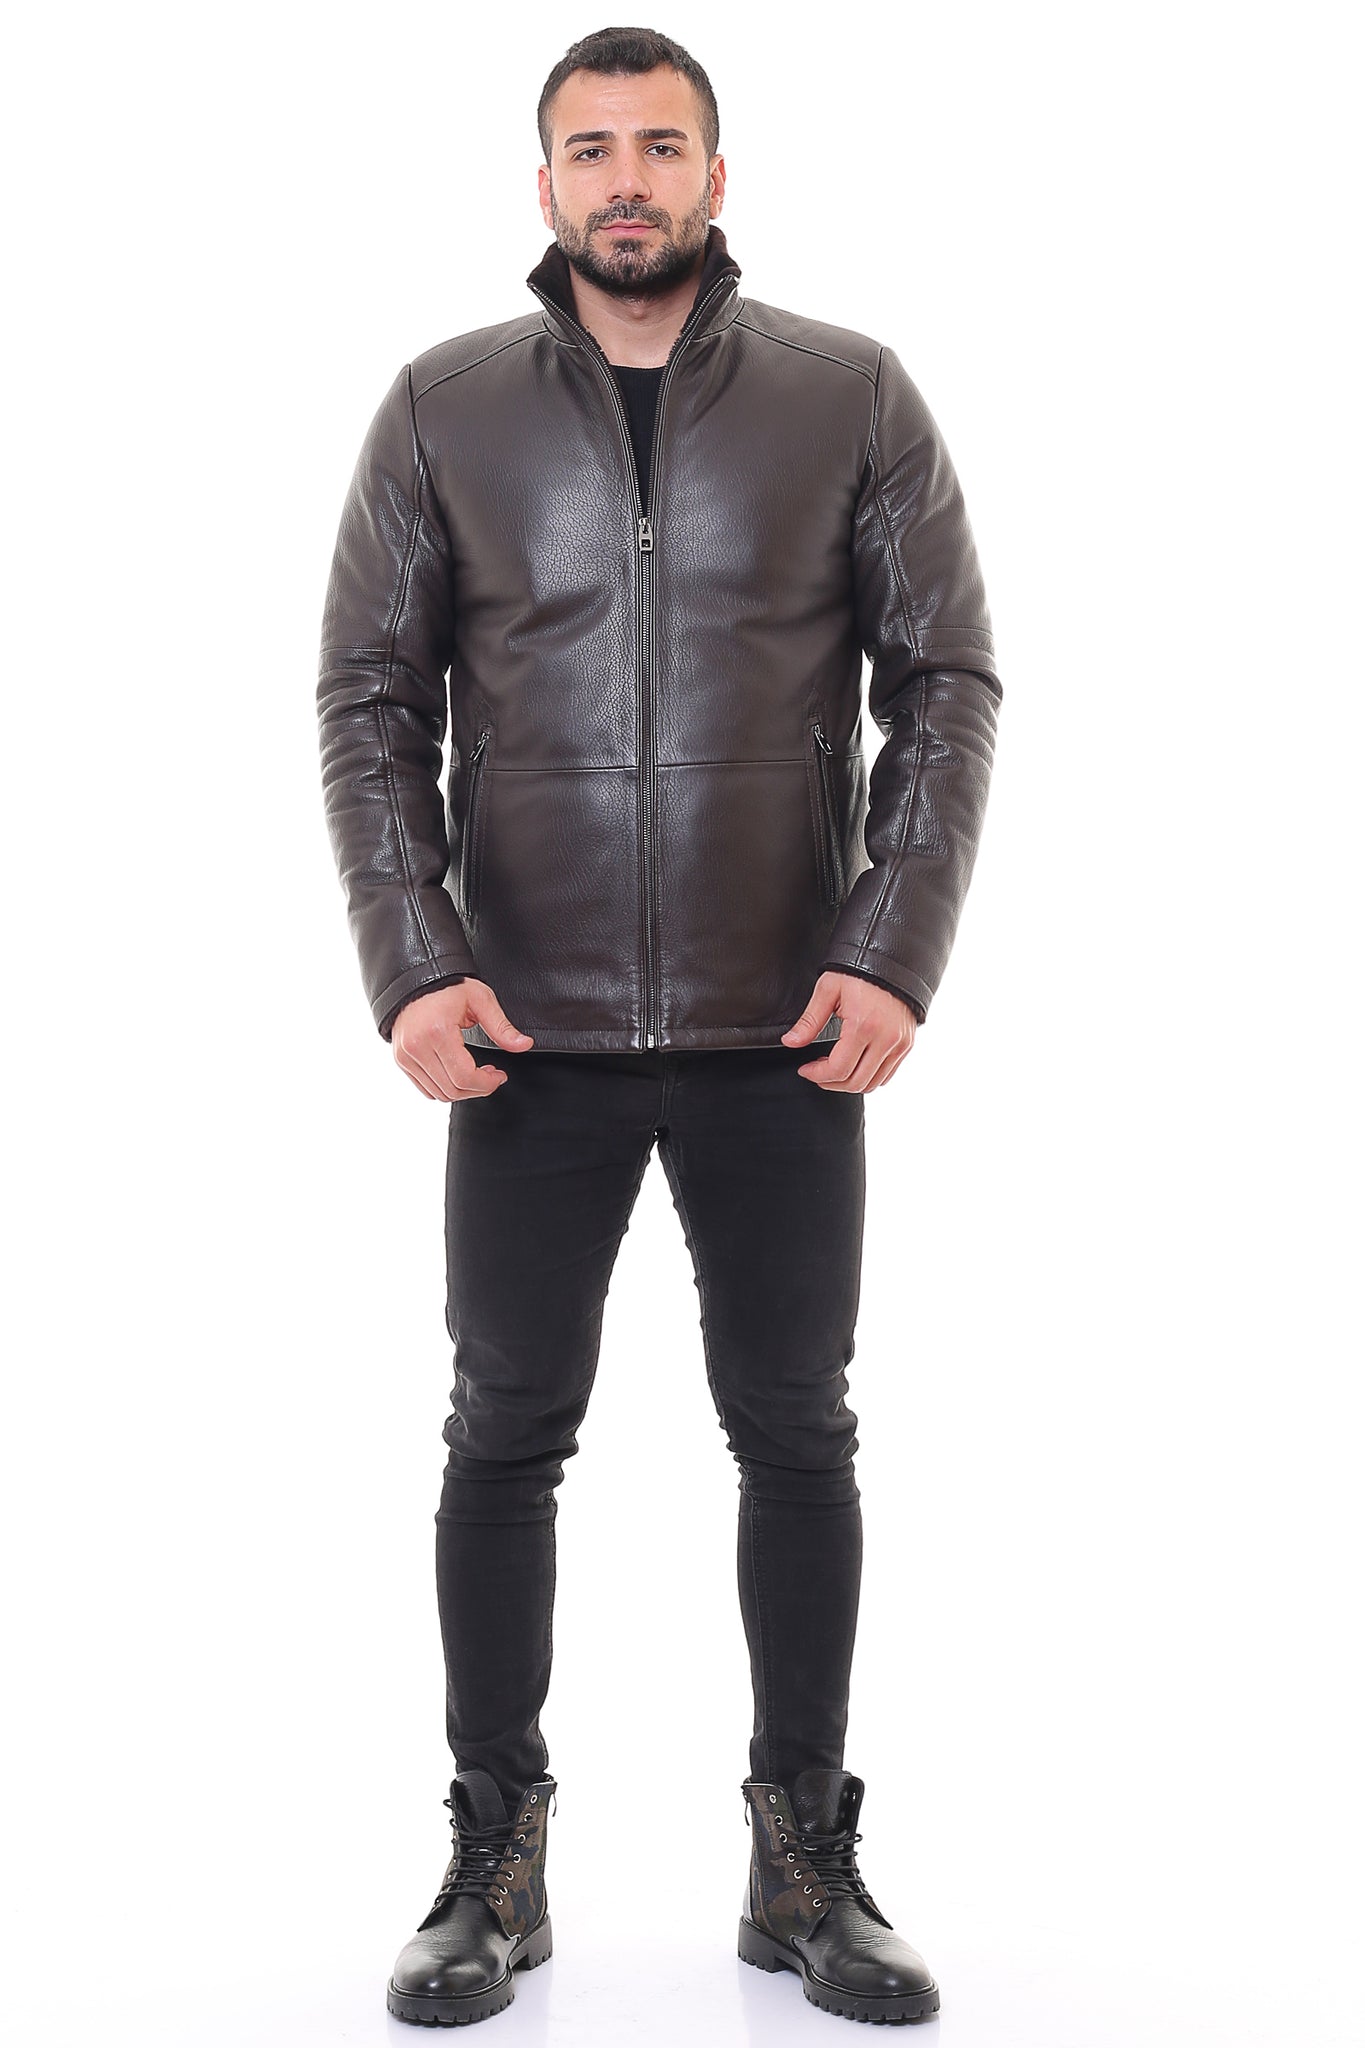 Razor Leather Jacket